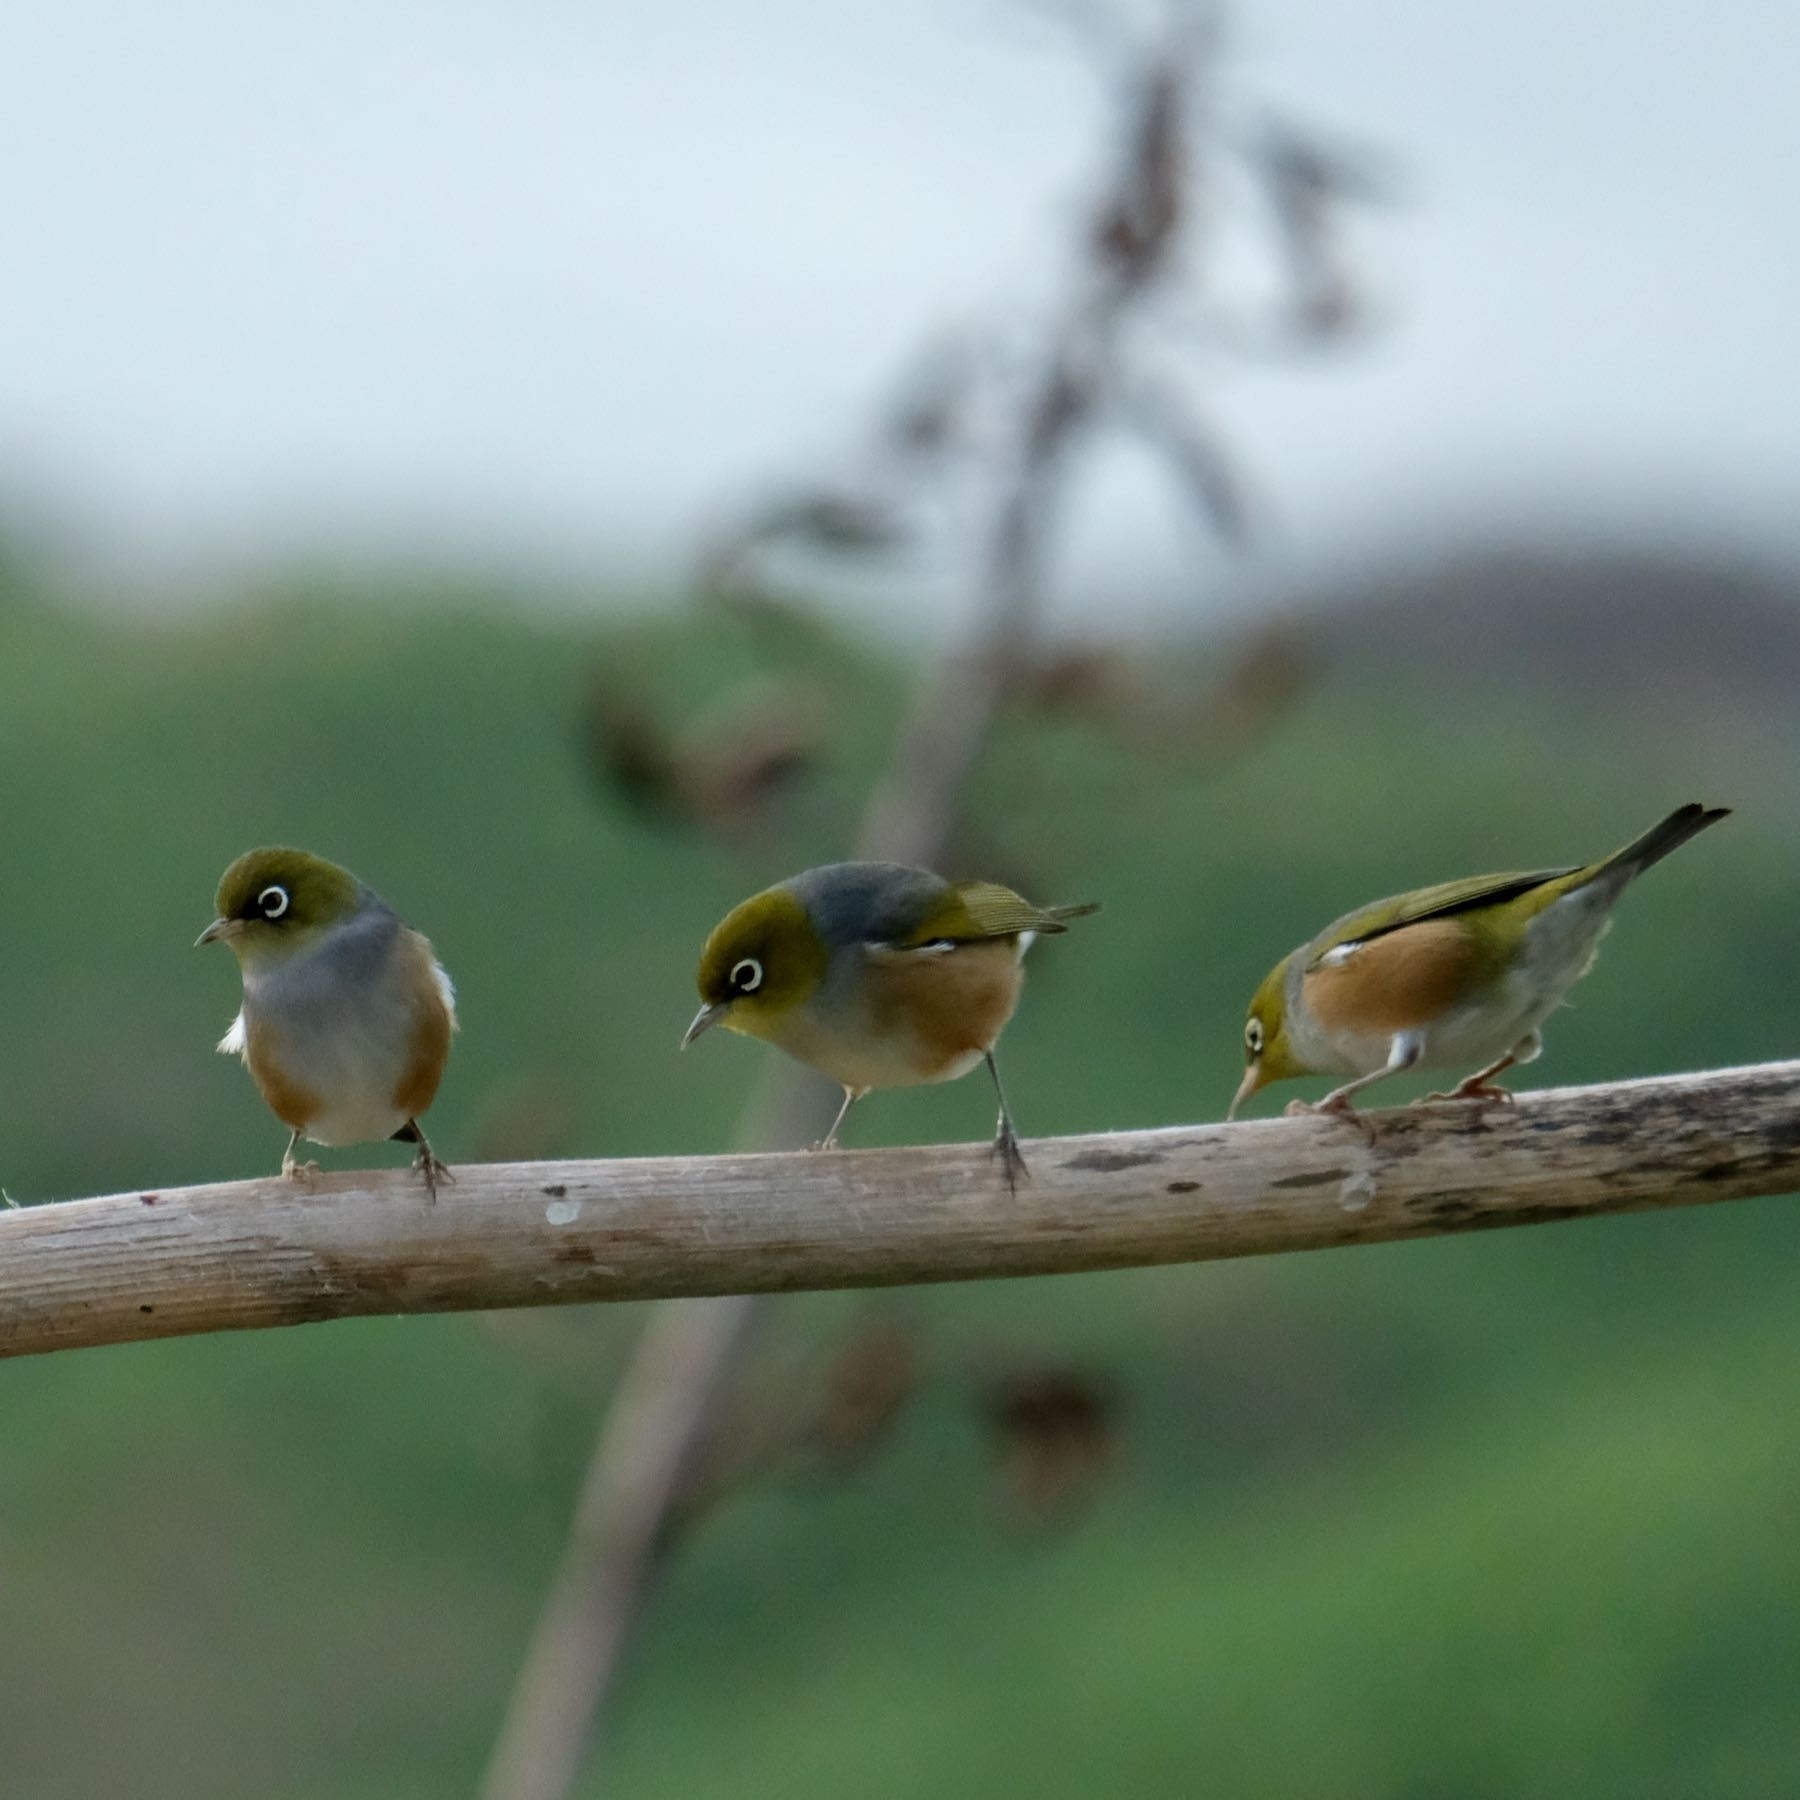 Three small birds on a nearby horizontal pole. 